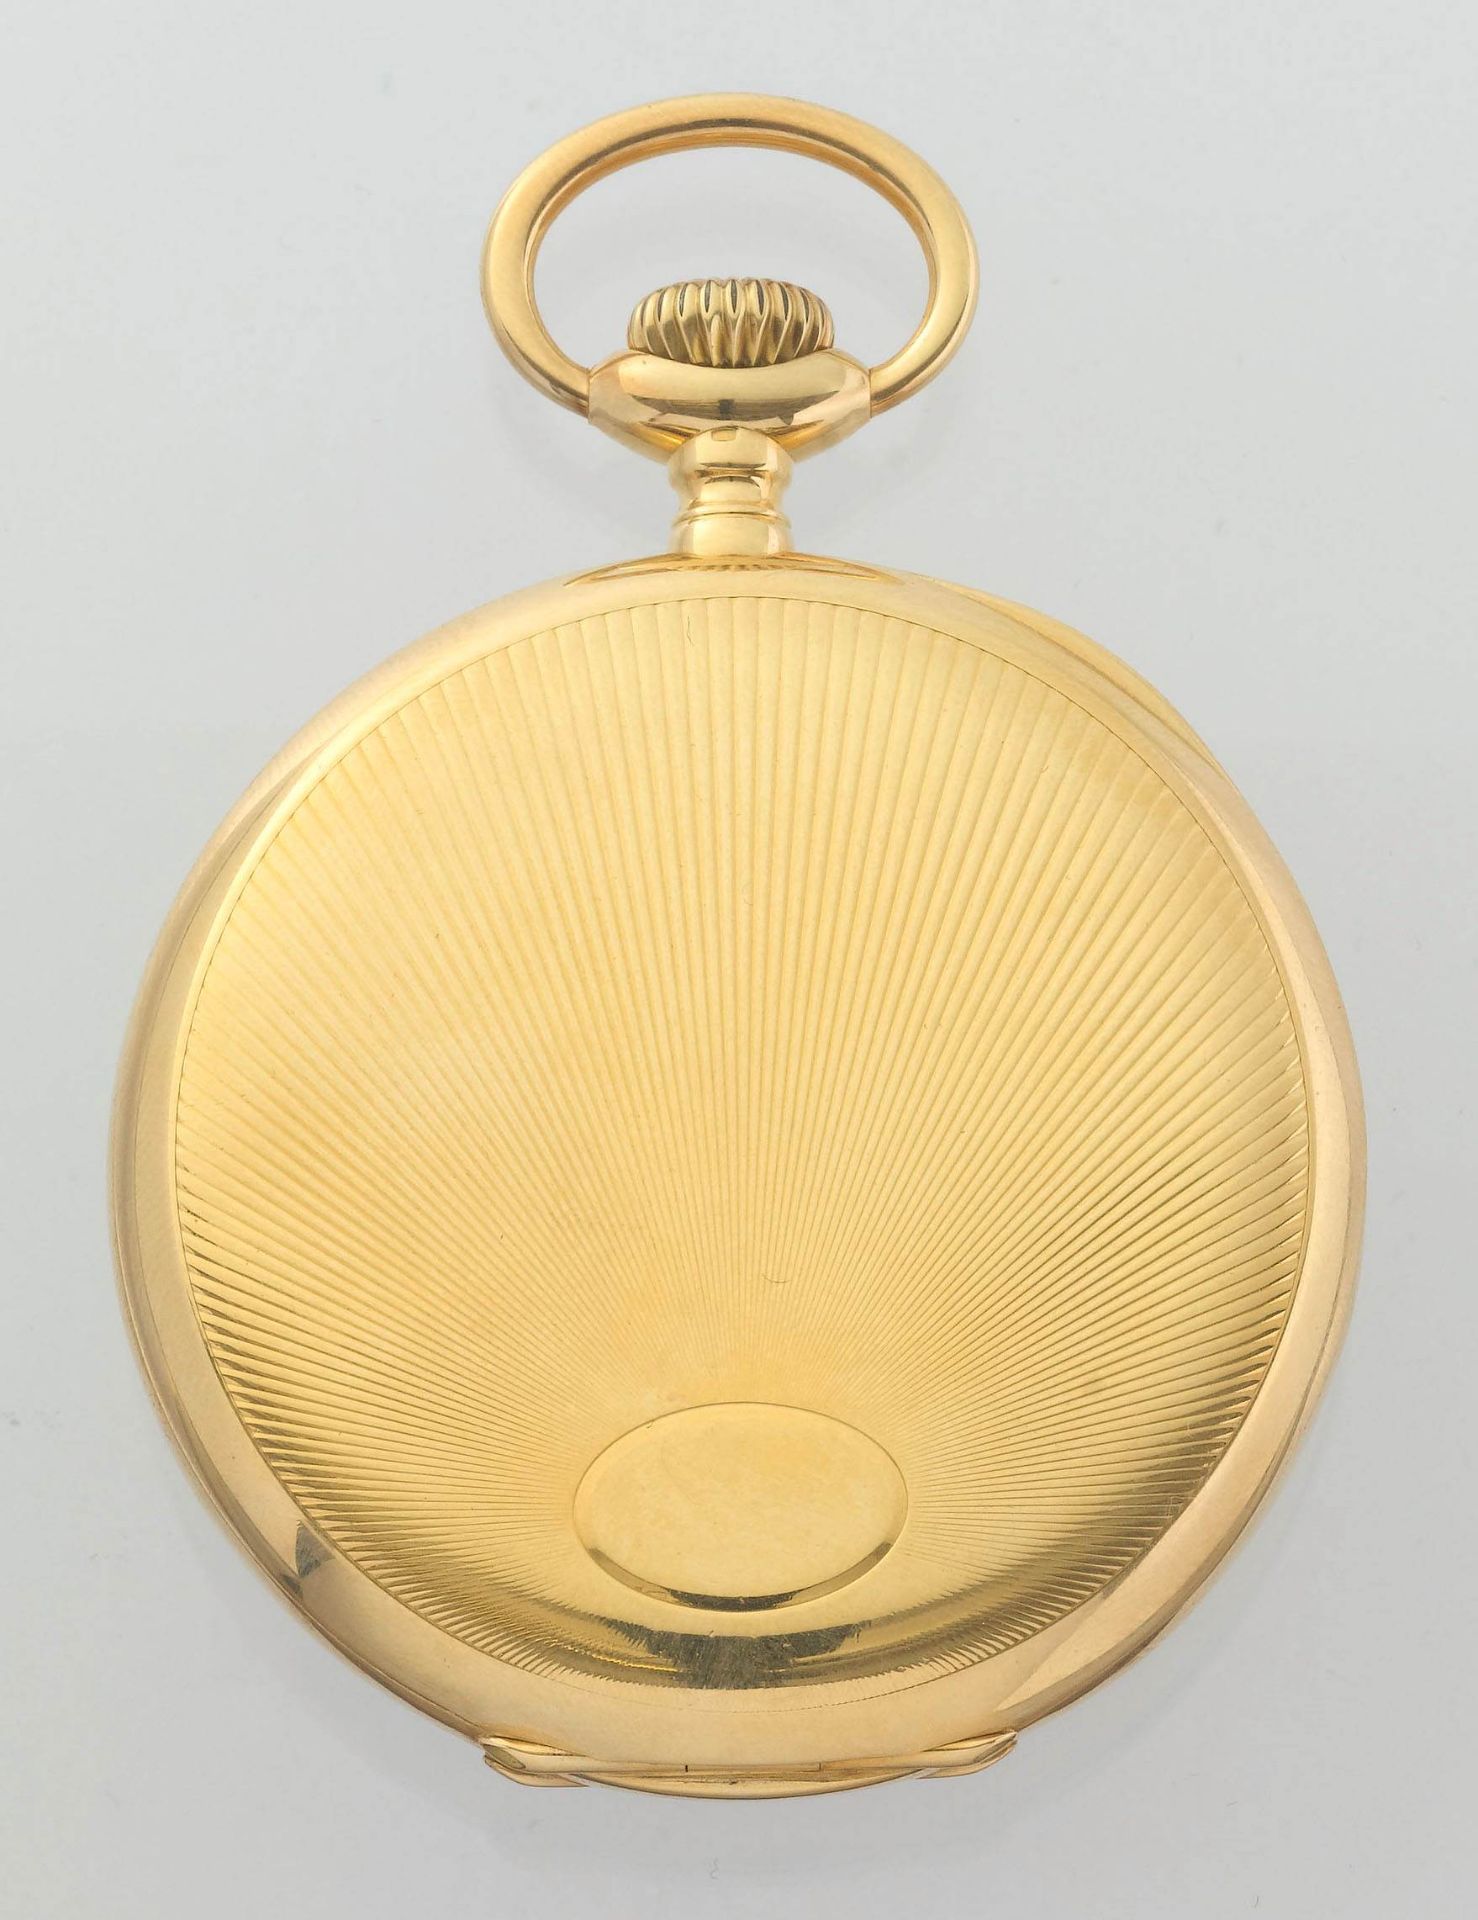 Vacheron & Constantin, grosse und schwere Chronometre Royal, 1909. - Bild 4 aus 4